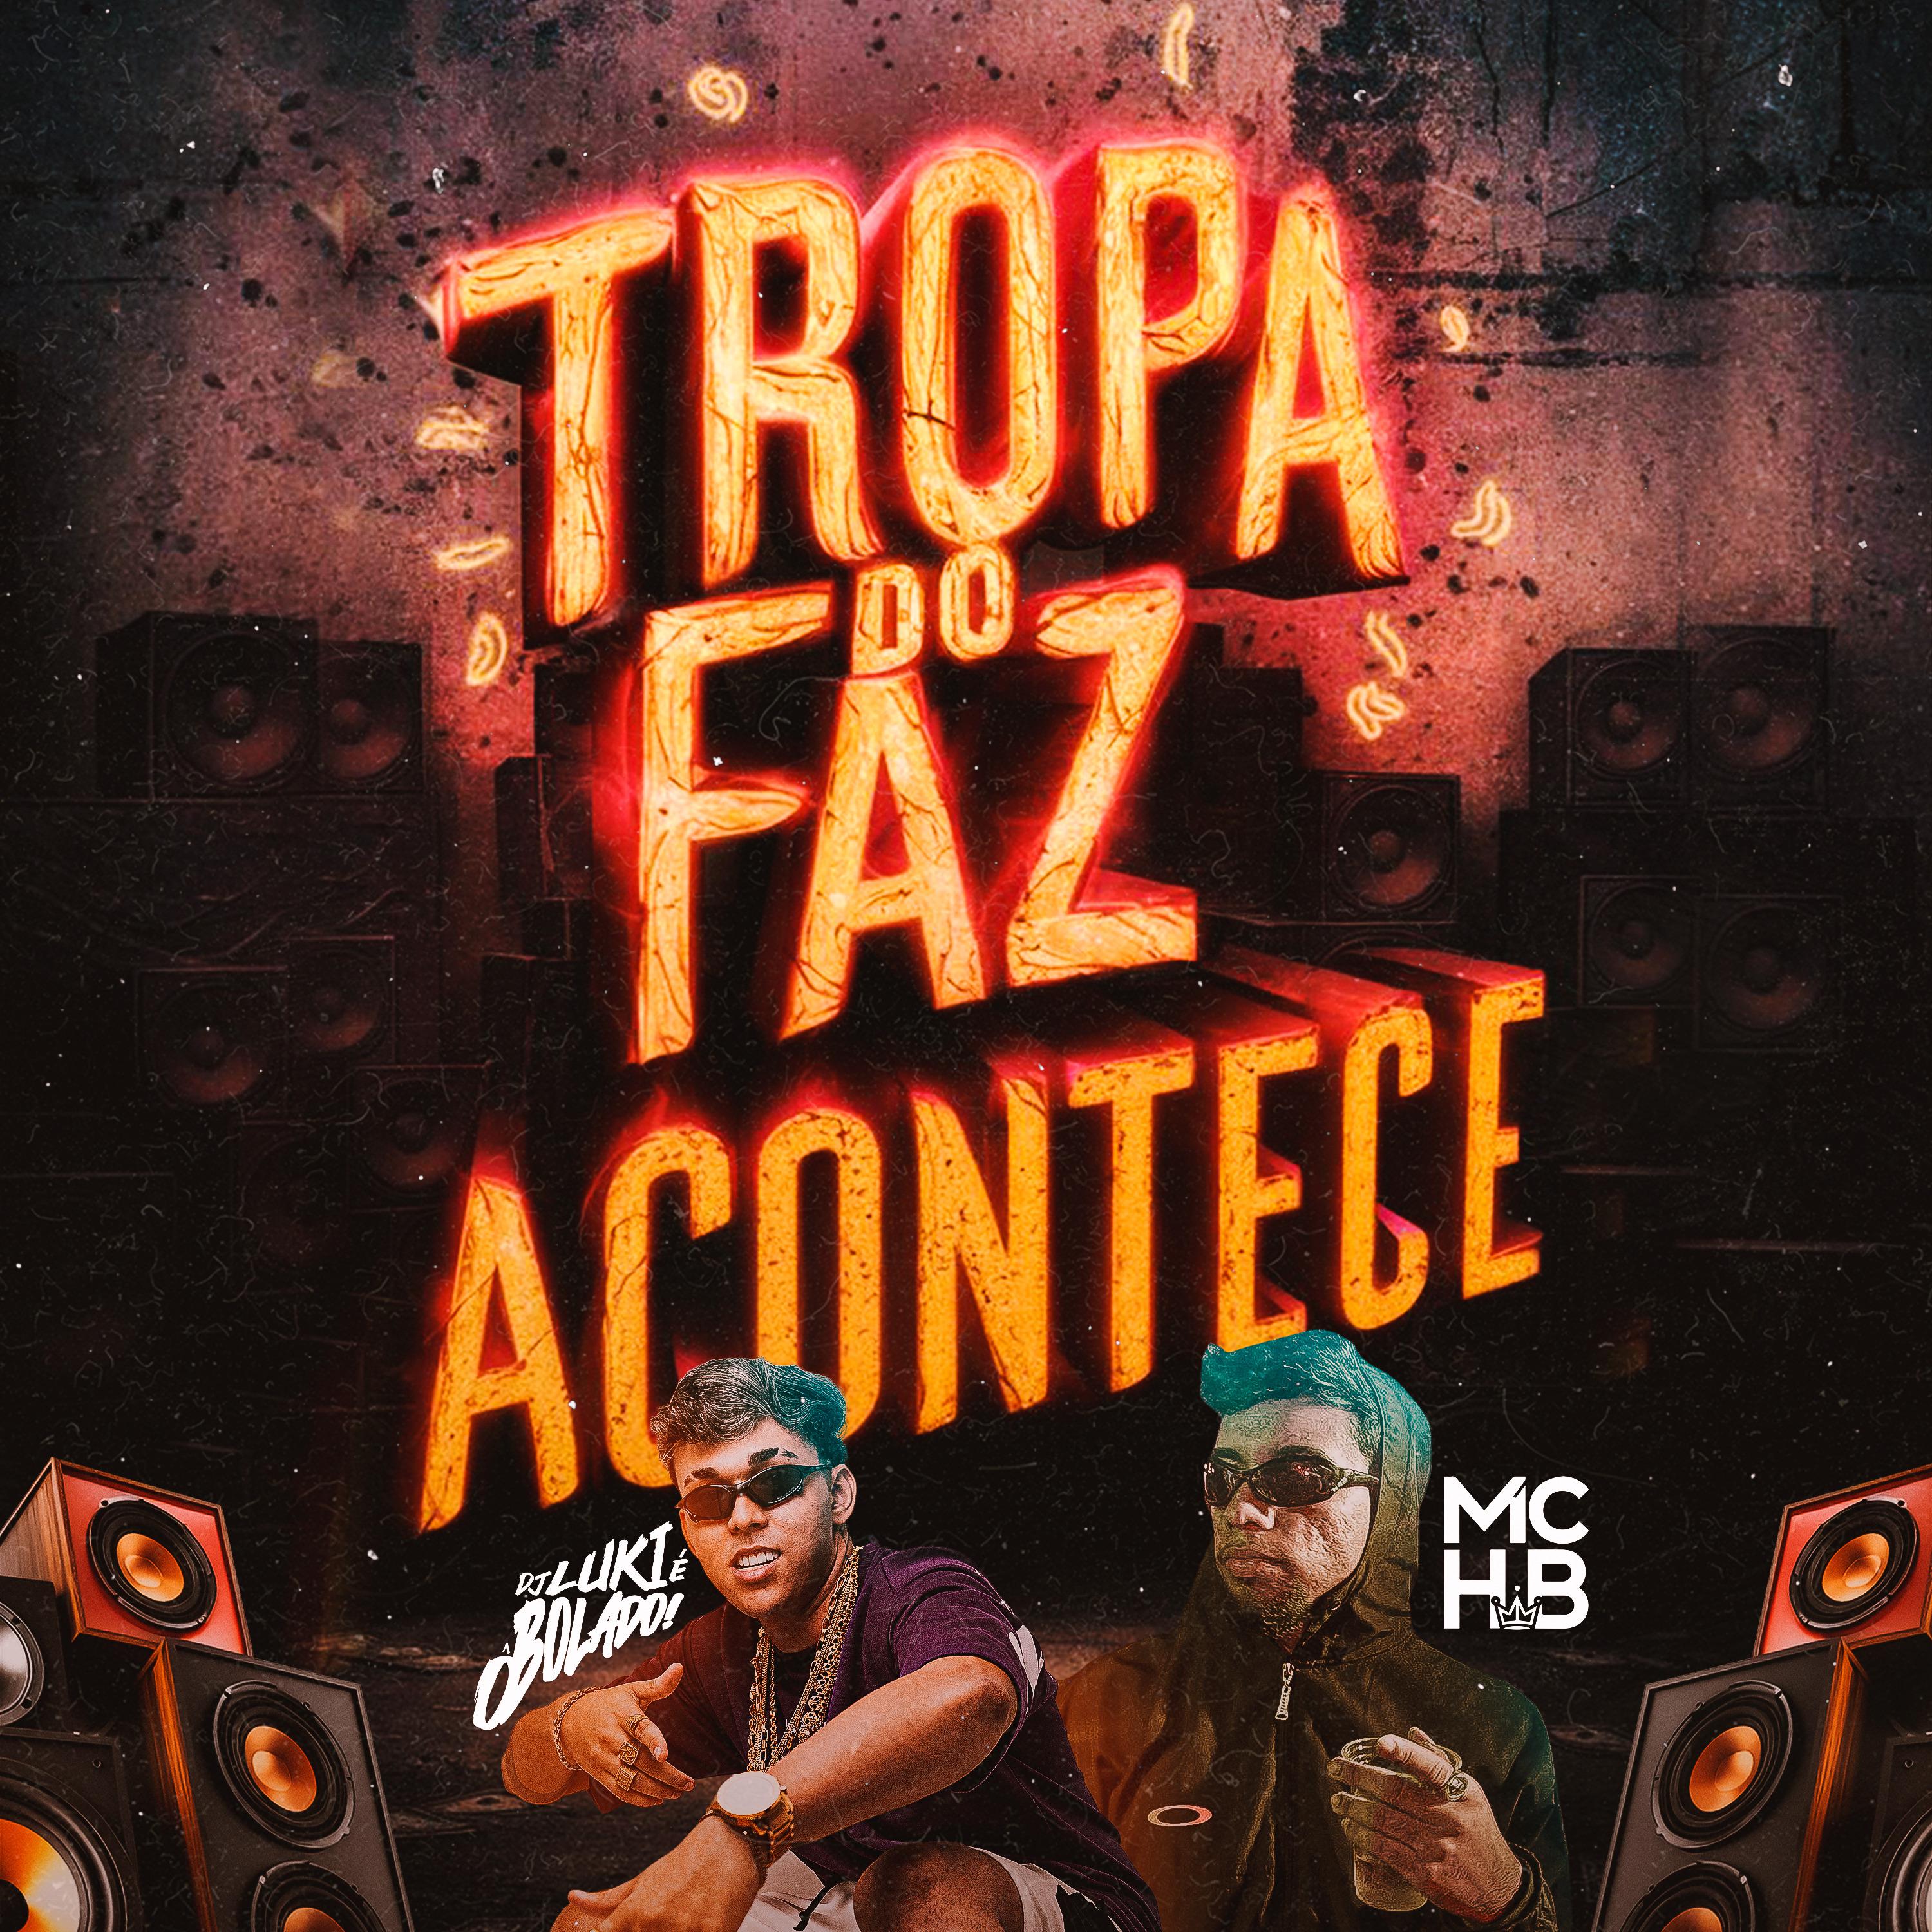 Постер альбома Tropa do Faz Acontece